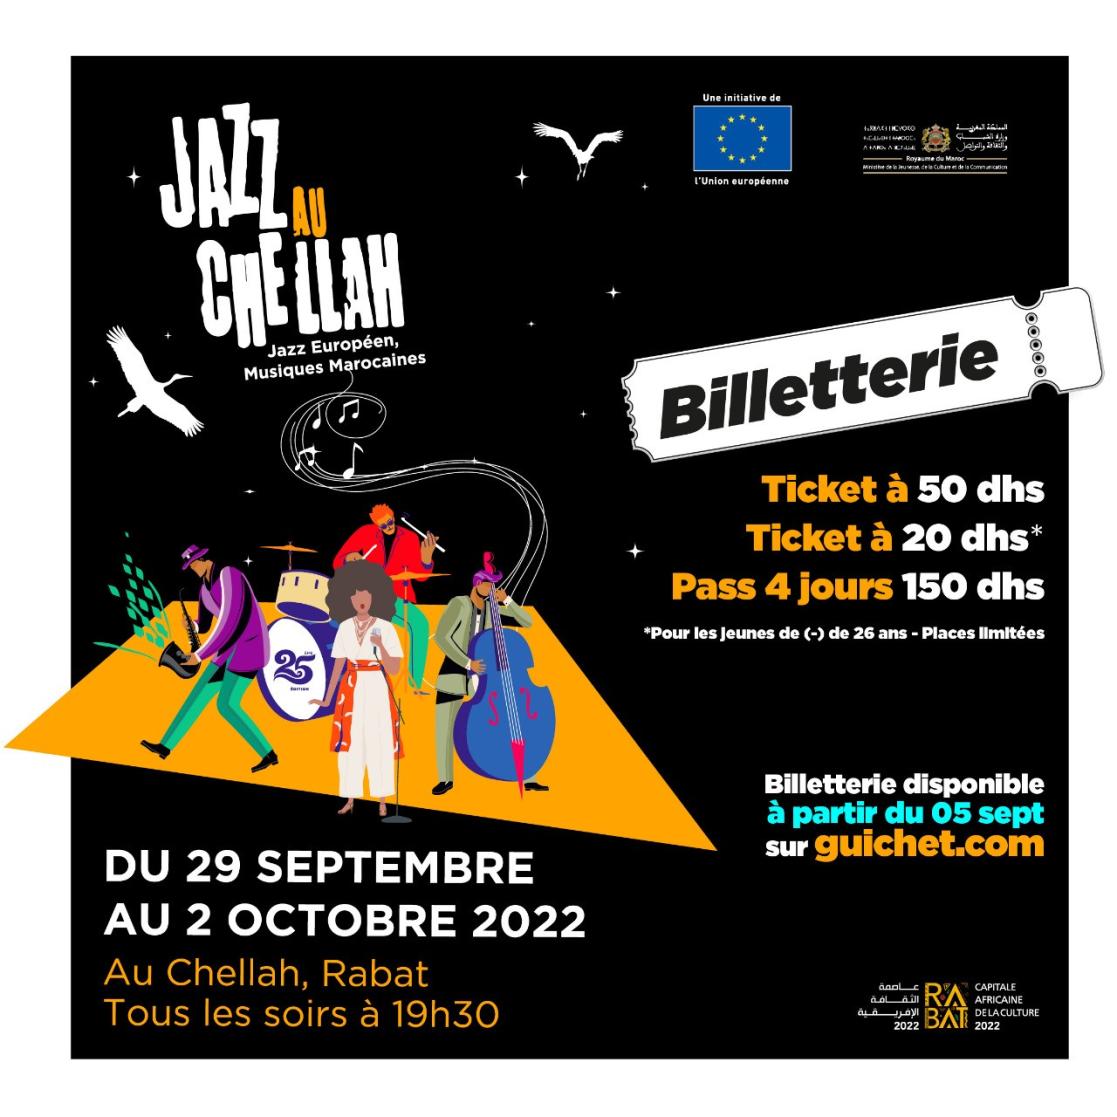 visuel du festival jazz au chellah avec un dessin de musiciens de jazz et des renseignements sur la vente de billetterie.